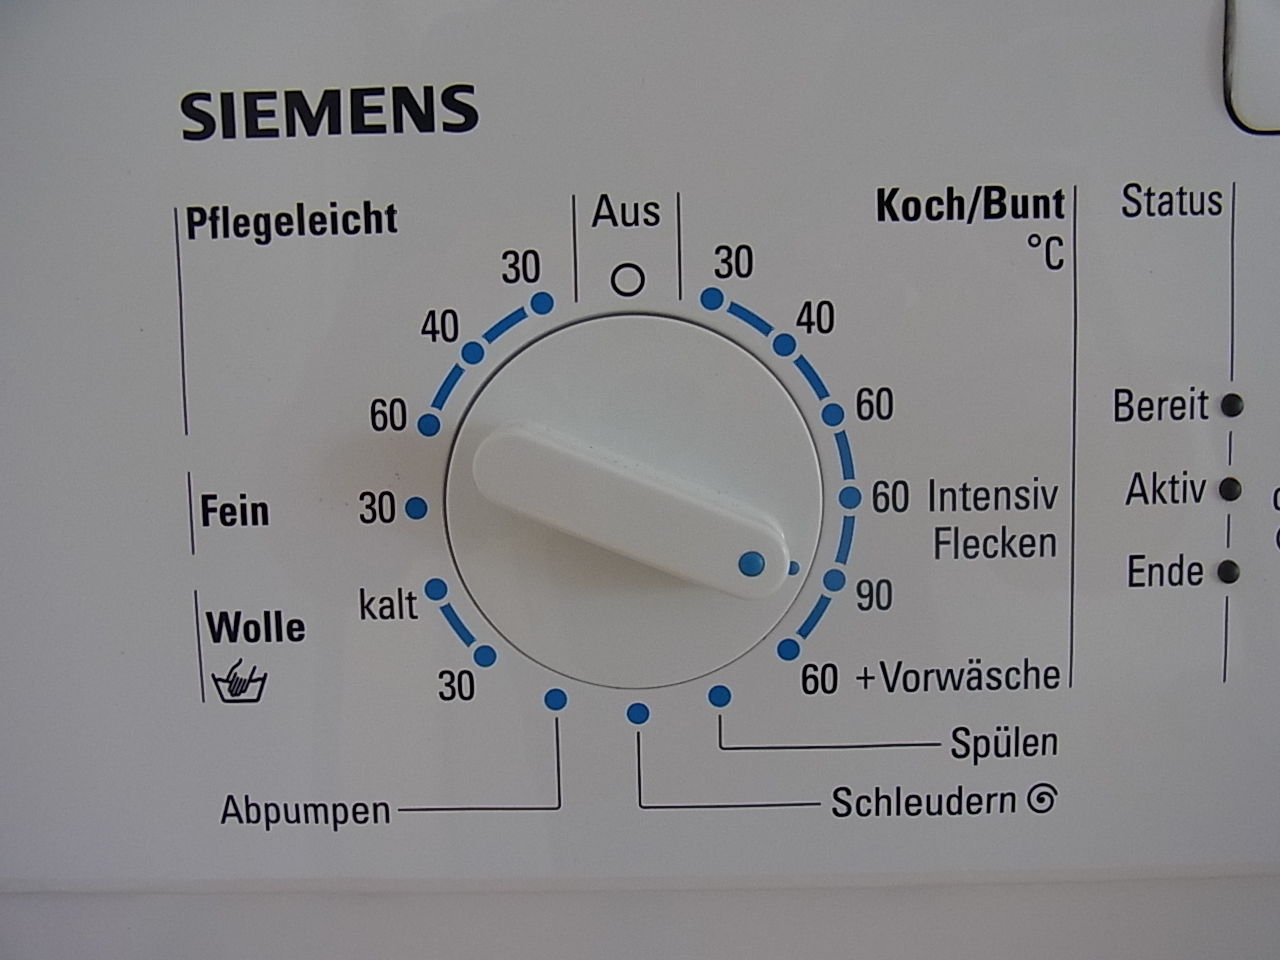 Стиральная машинка перевод. Стиральная машинка на немецком языке. Abpumpen в стиральной машине. Значки на стиральной машине Сименс. Wolle на стиральной машине.